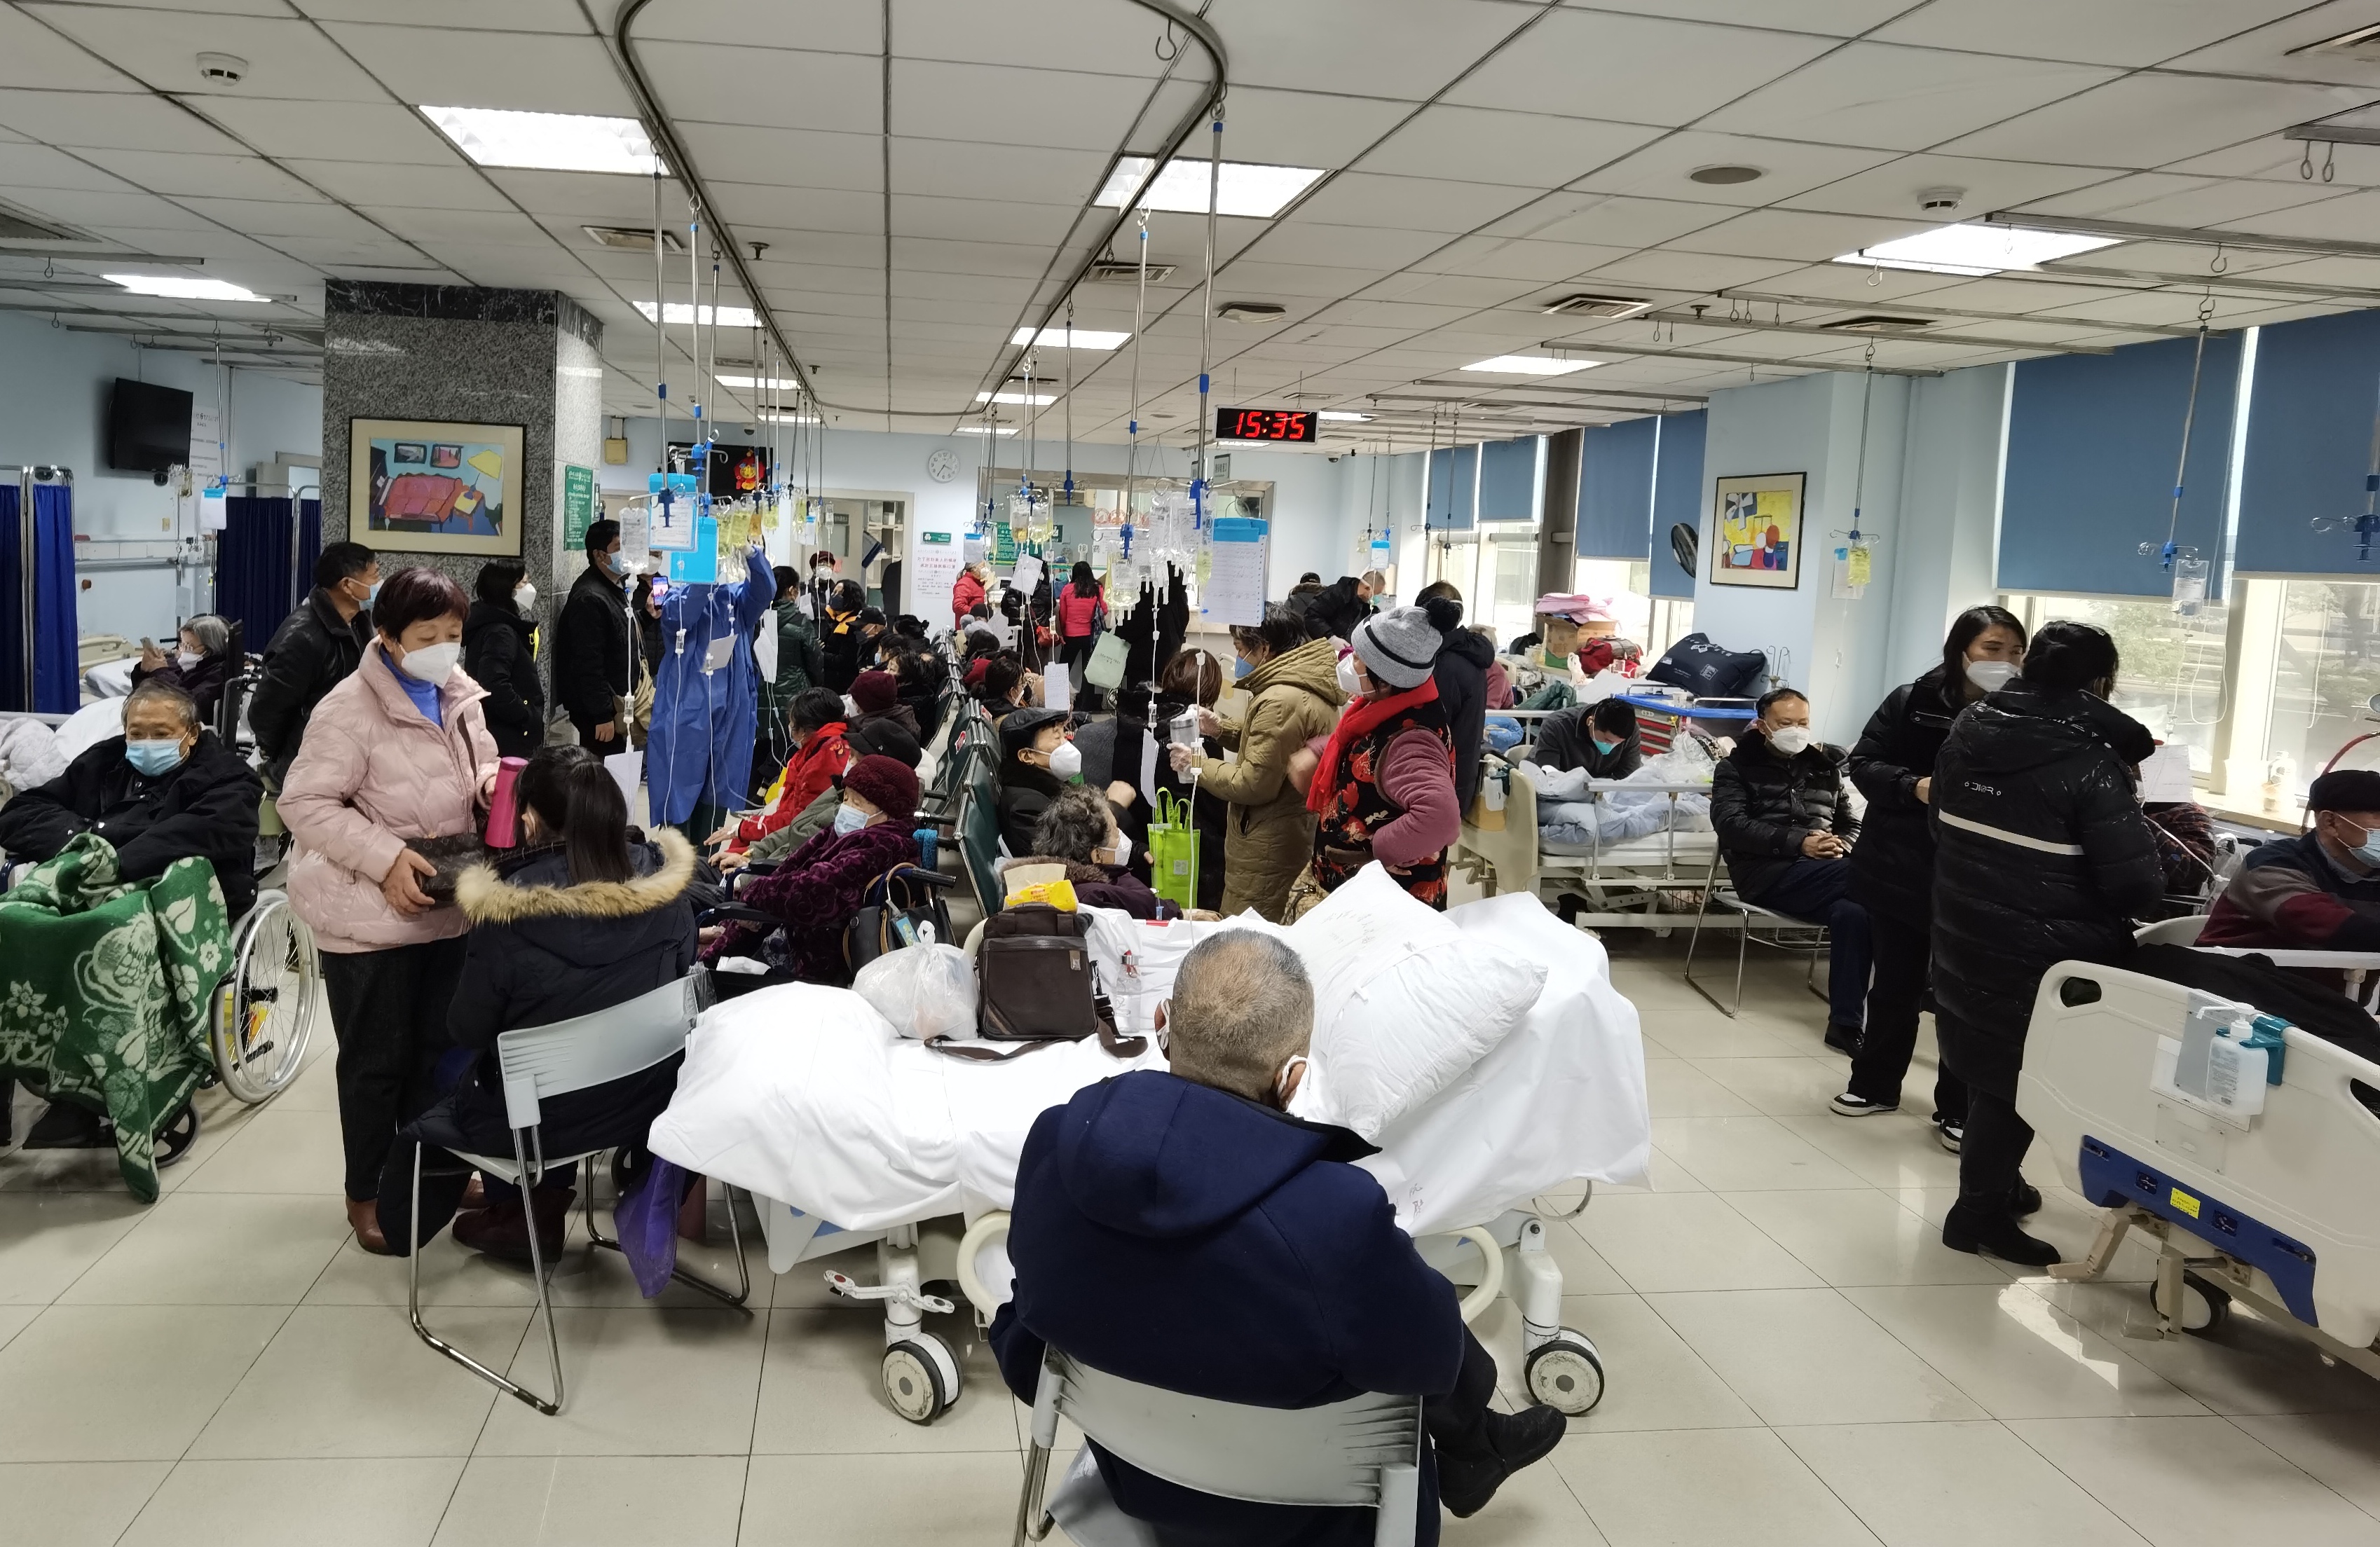 彰显「红色医院」的使命与担当  武汉大学人民医院打造「超级医院」全力保障医疗救治